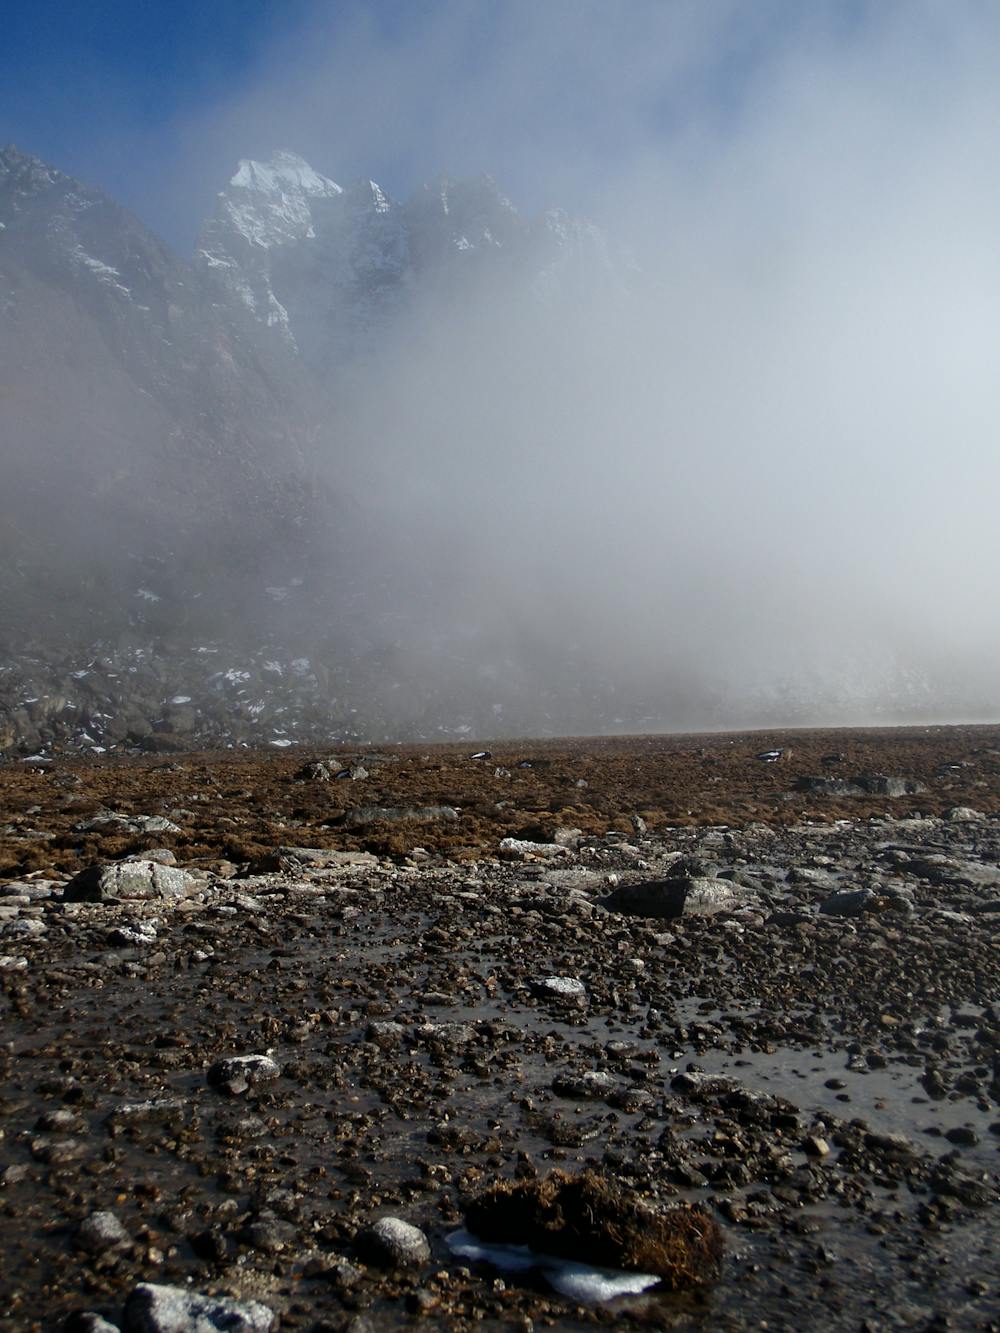 Moody views in the upper Khumbu